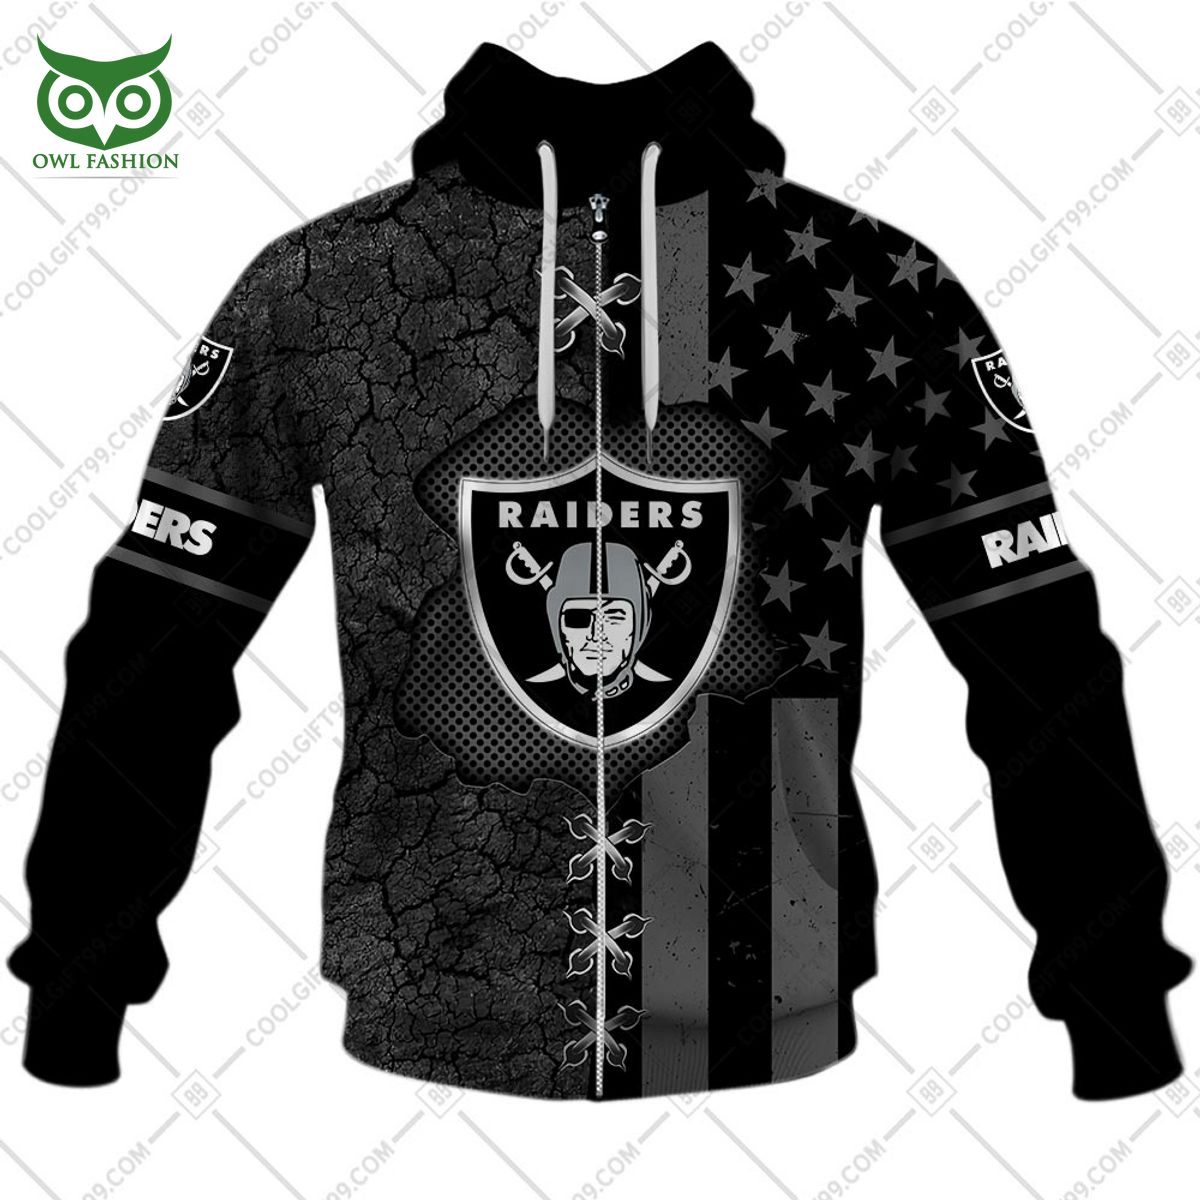 nfl flag custom las vegas raiders printed hoodie shirt 5 s27GK.jpg